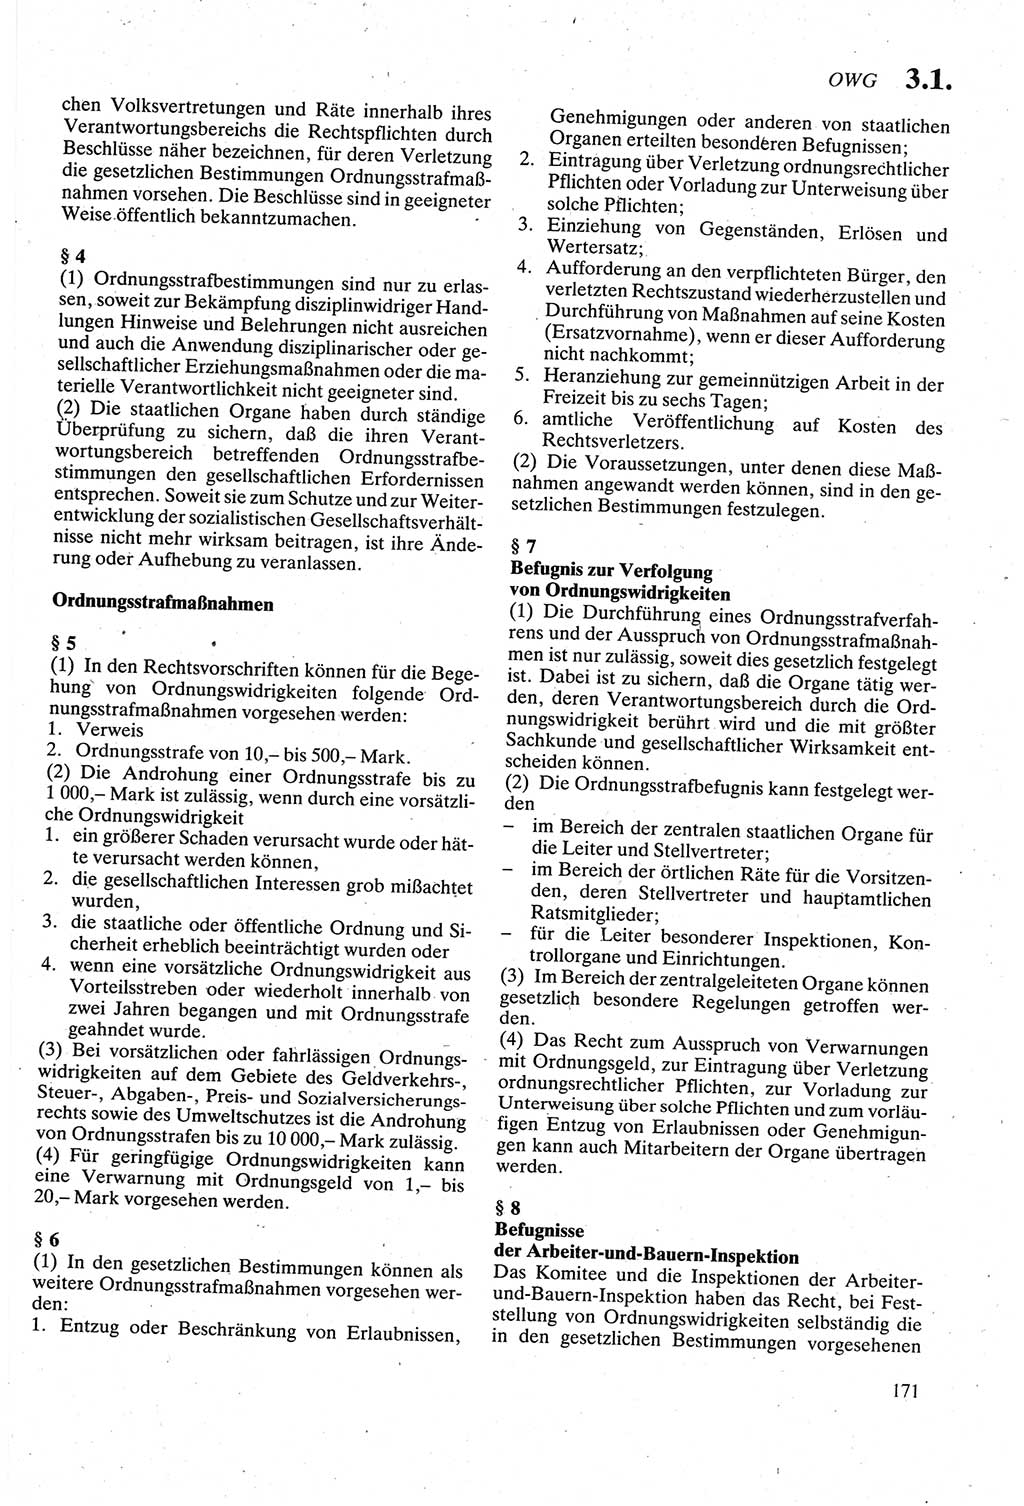 Strafgesetzbuch (StGB) der Deutschen Demokratischen Republik (DDR) sowie angrenzende Gesetze und Bestimmungen 1979, Seite 171 (StGB DDR Ges. Best. 1979, S. 171)